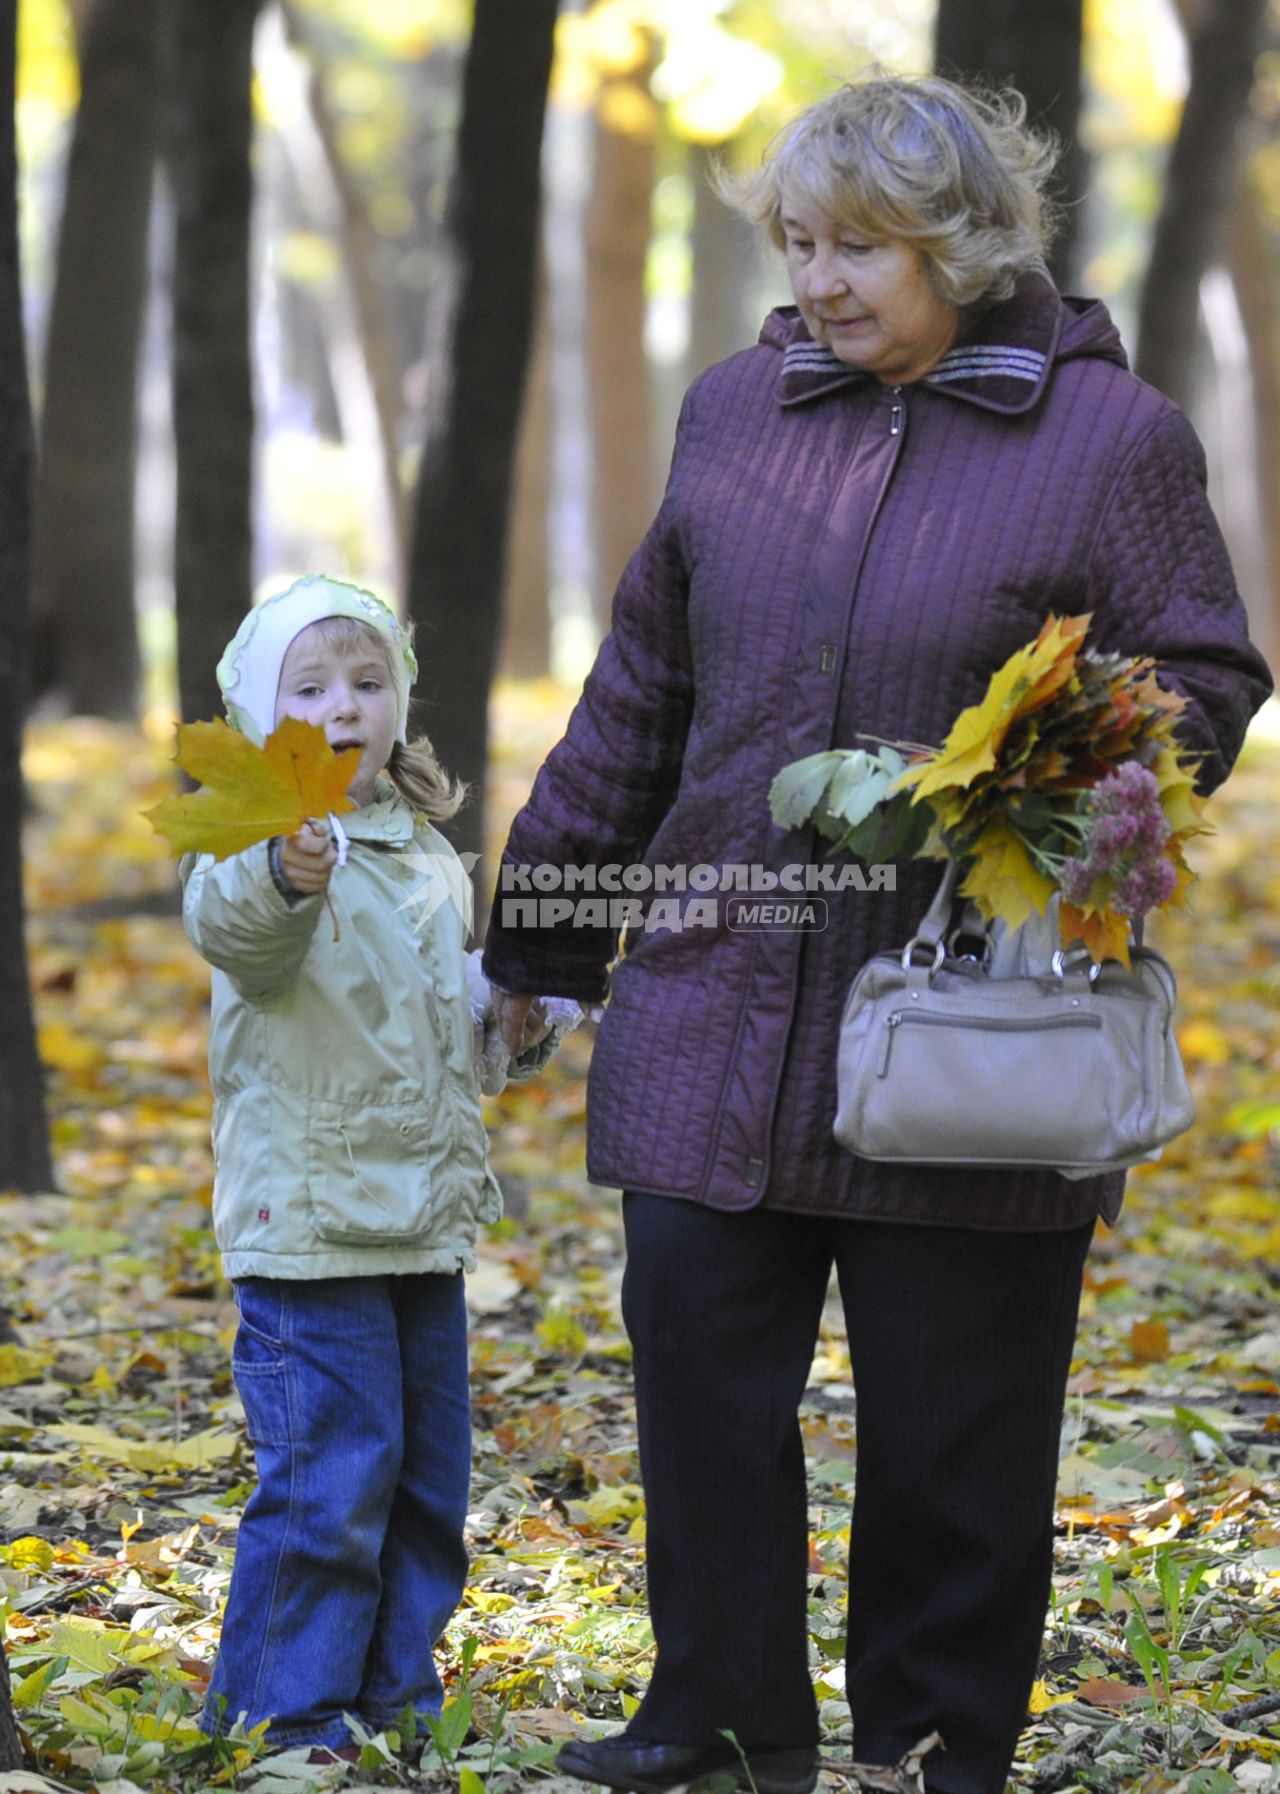 Женщина и девочка собирают осенную листву в парке.